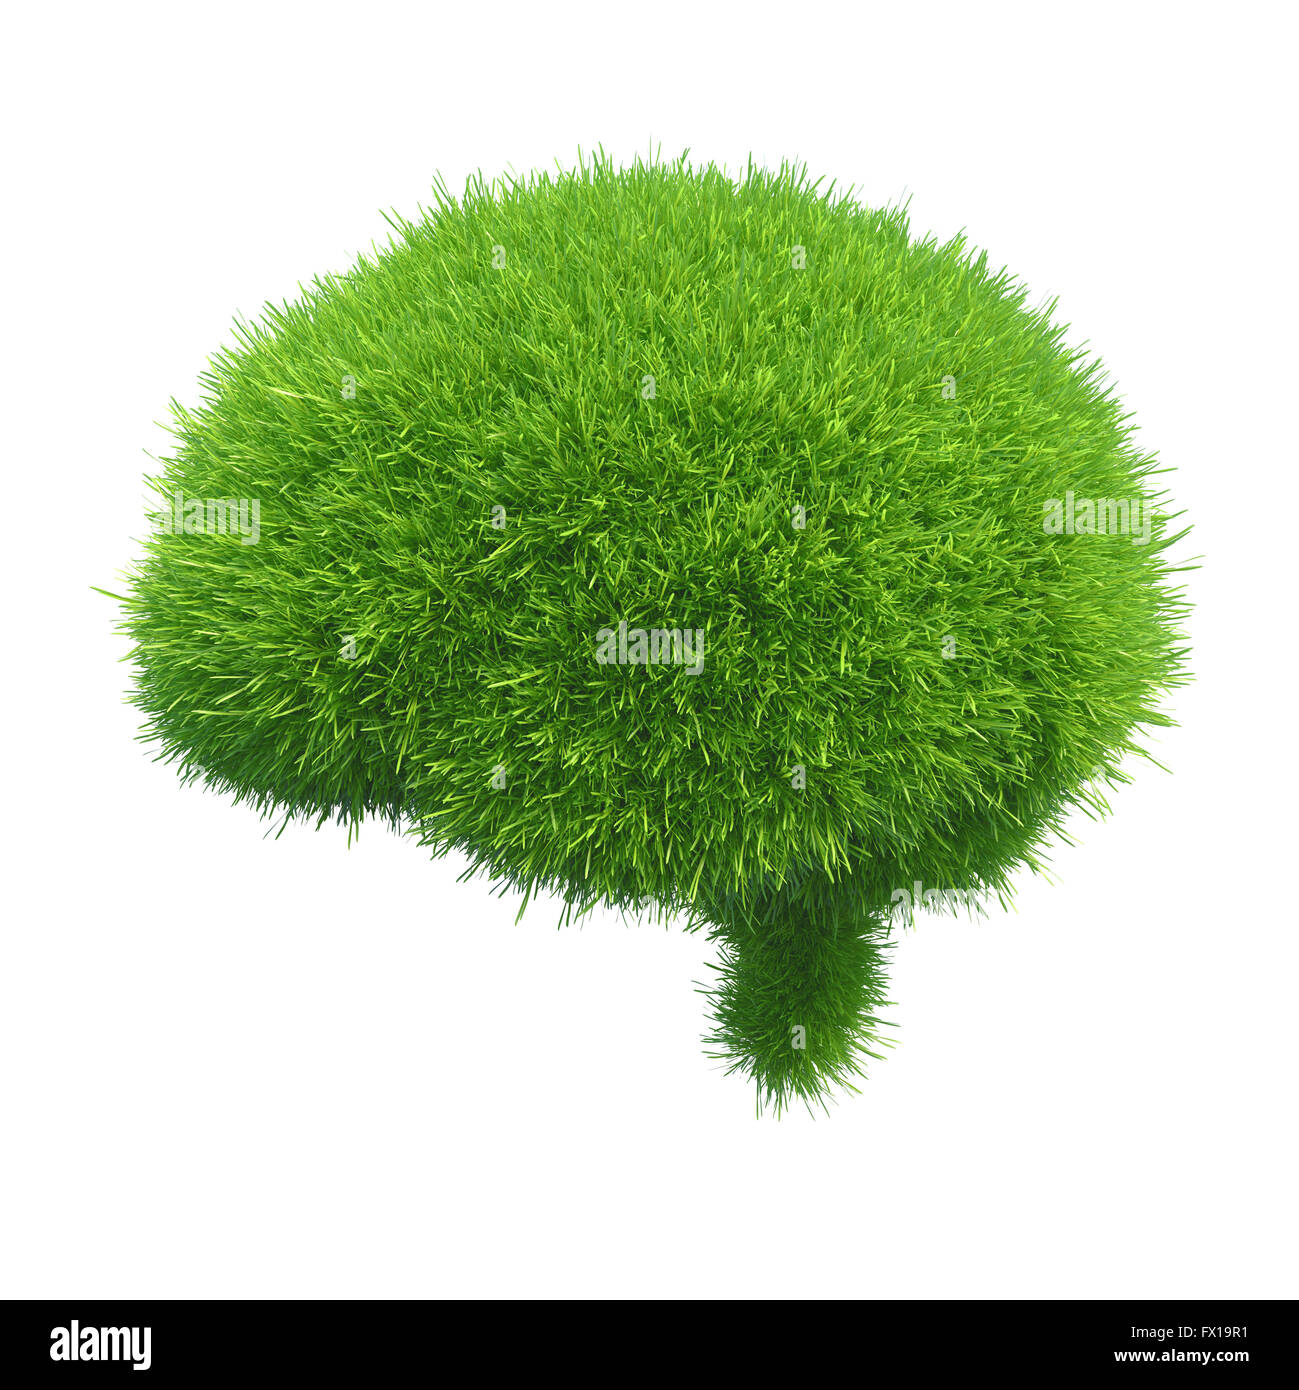 Menschliches Gehirn ist bedeckt mit grünen Rasen isoliert auf weißem Hintergrund Stockfoto